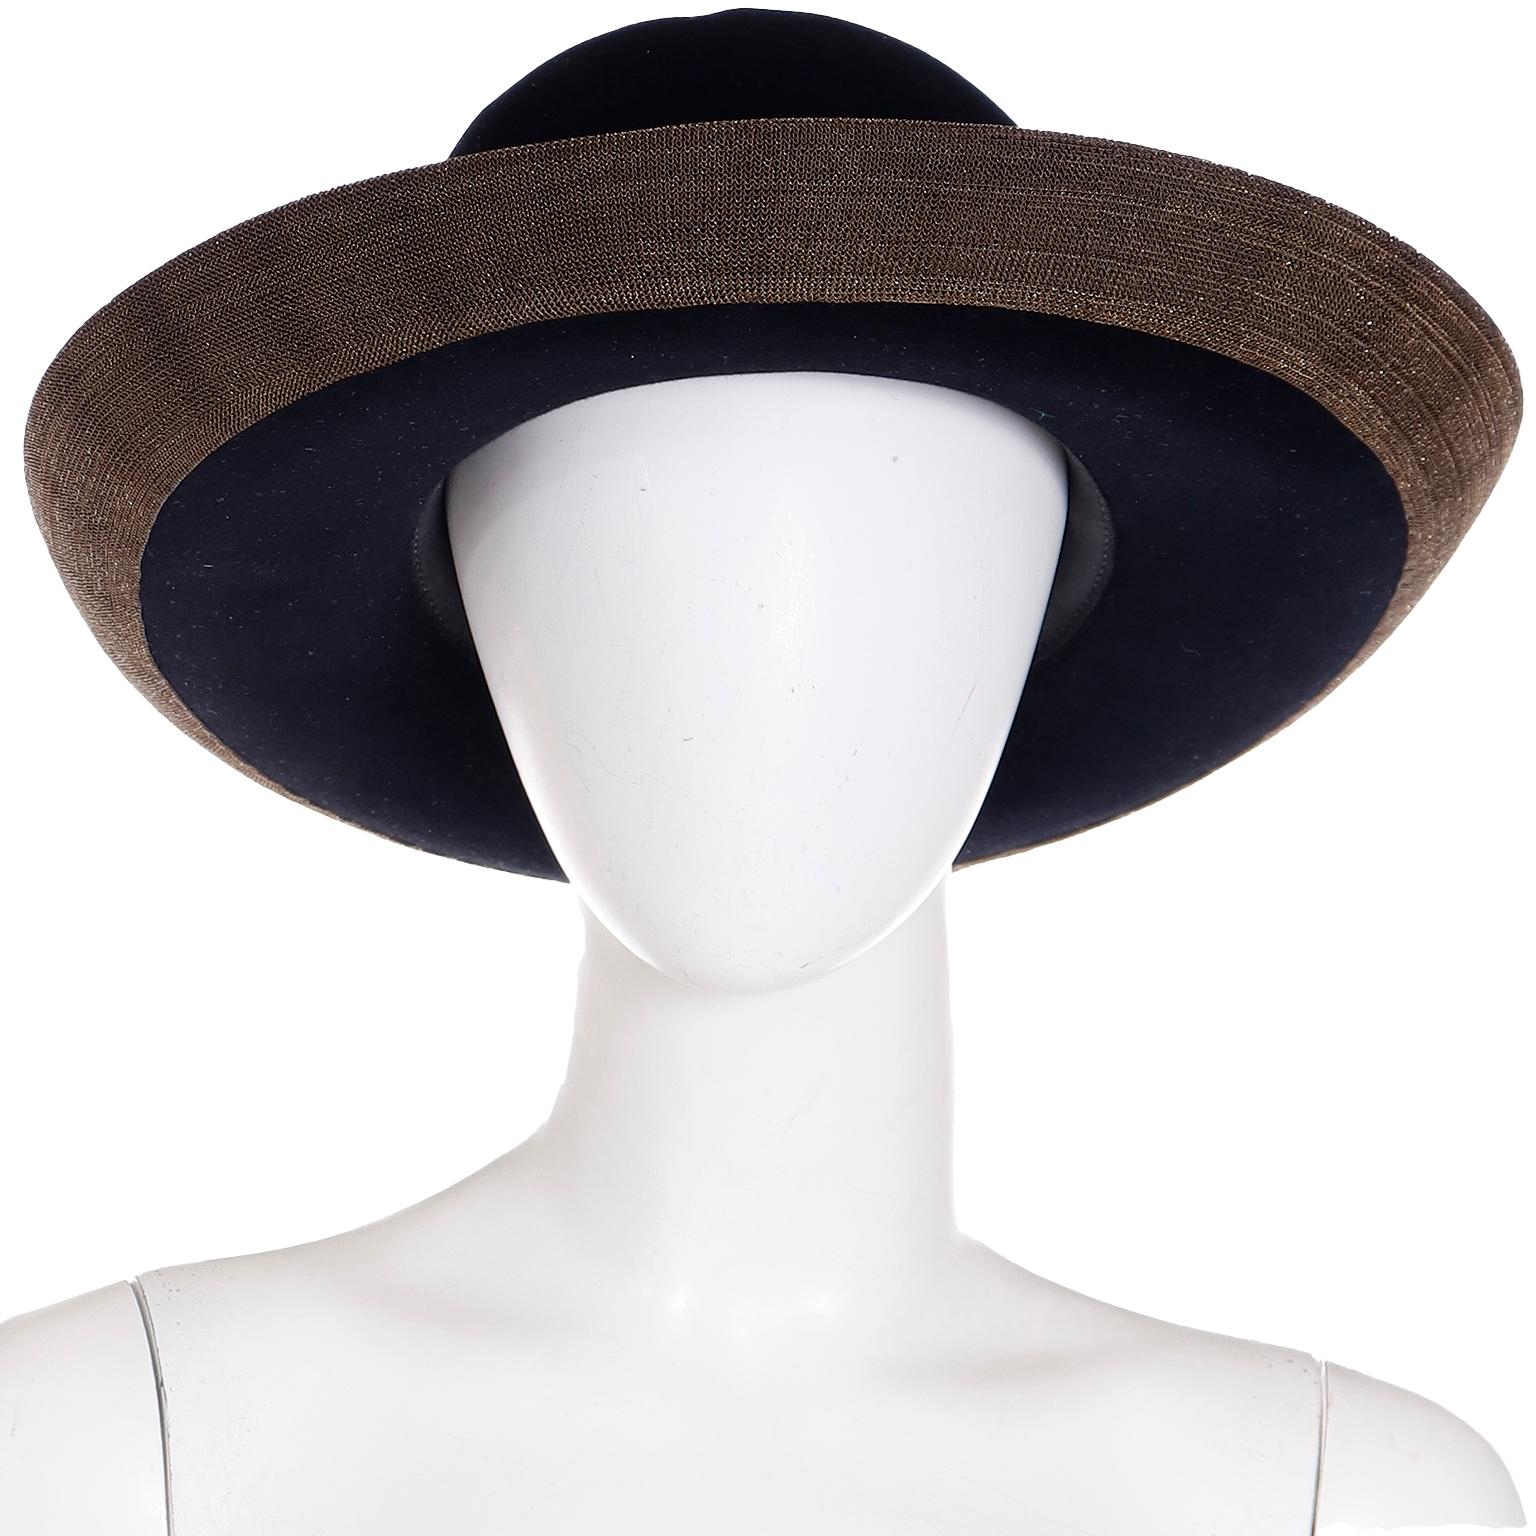 Fabuleux chapeau en laine feutrée noire Patricia Underwood New York, datant des années 1990. Les chapeaux Patricia Underwood étaient parmi les meilleurs chapeaux en termes de qualité et de style et nous aimons toujours les trouver ! Nous adorons le